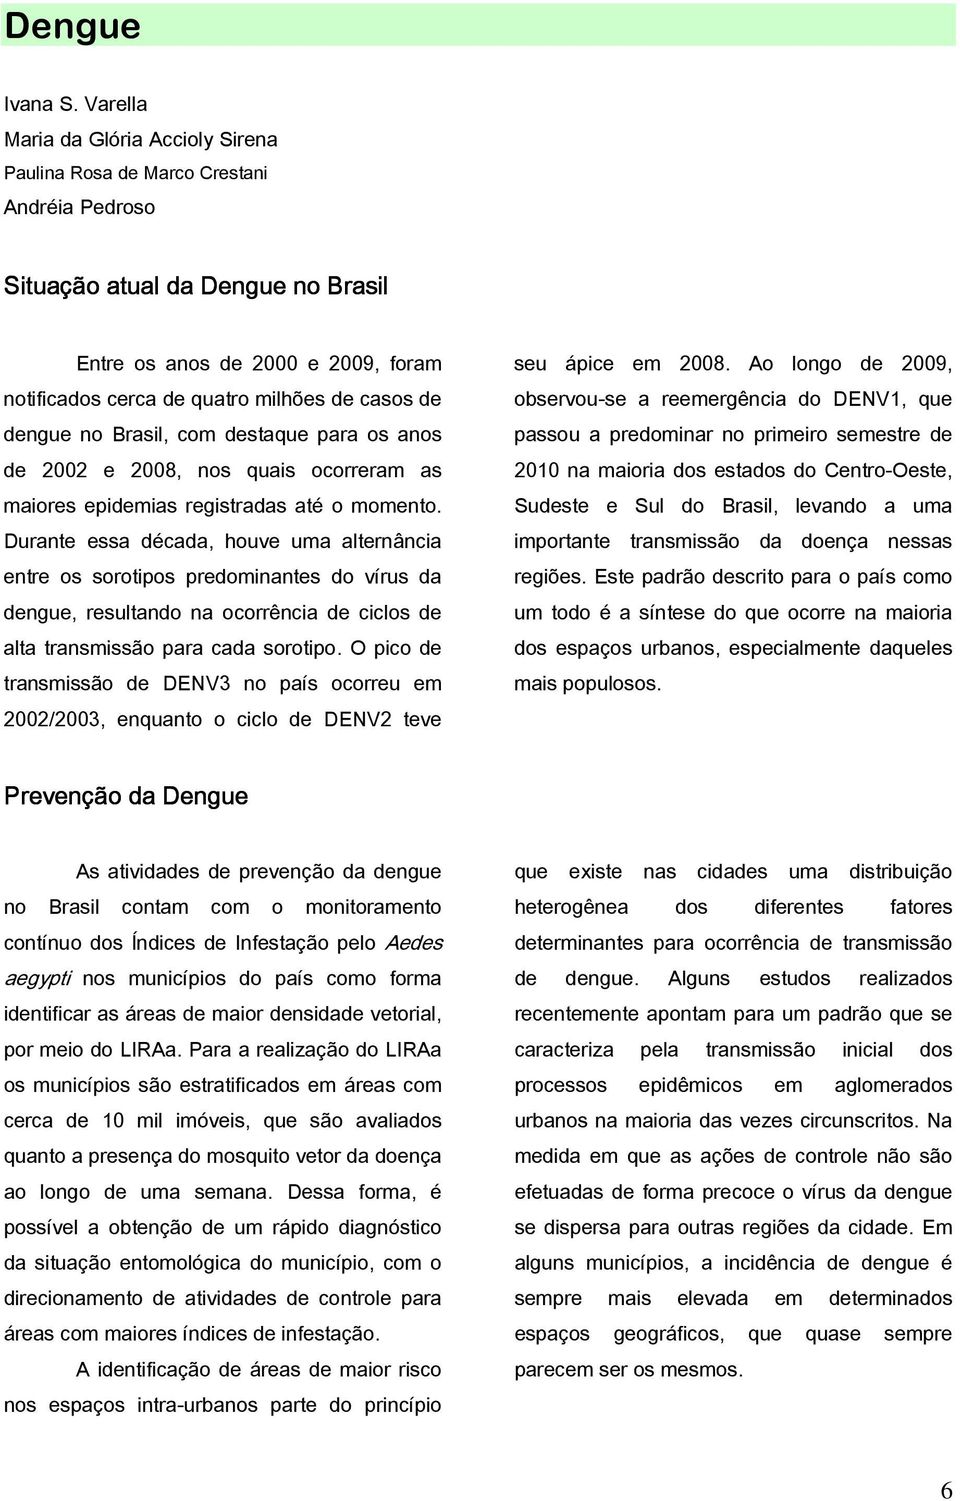 casos de dengue no Brasil, com destaque para os anos de 2002 e 2008, nos quais ocorreram as maiores epidemias registradas até o momento.